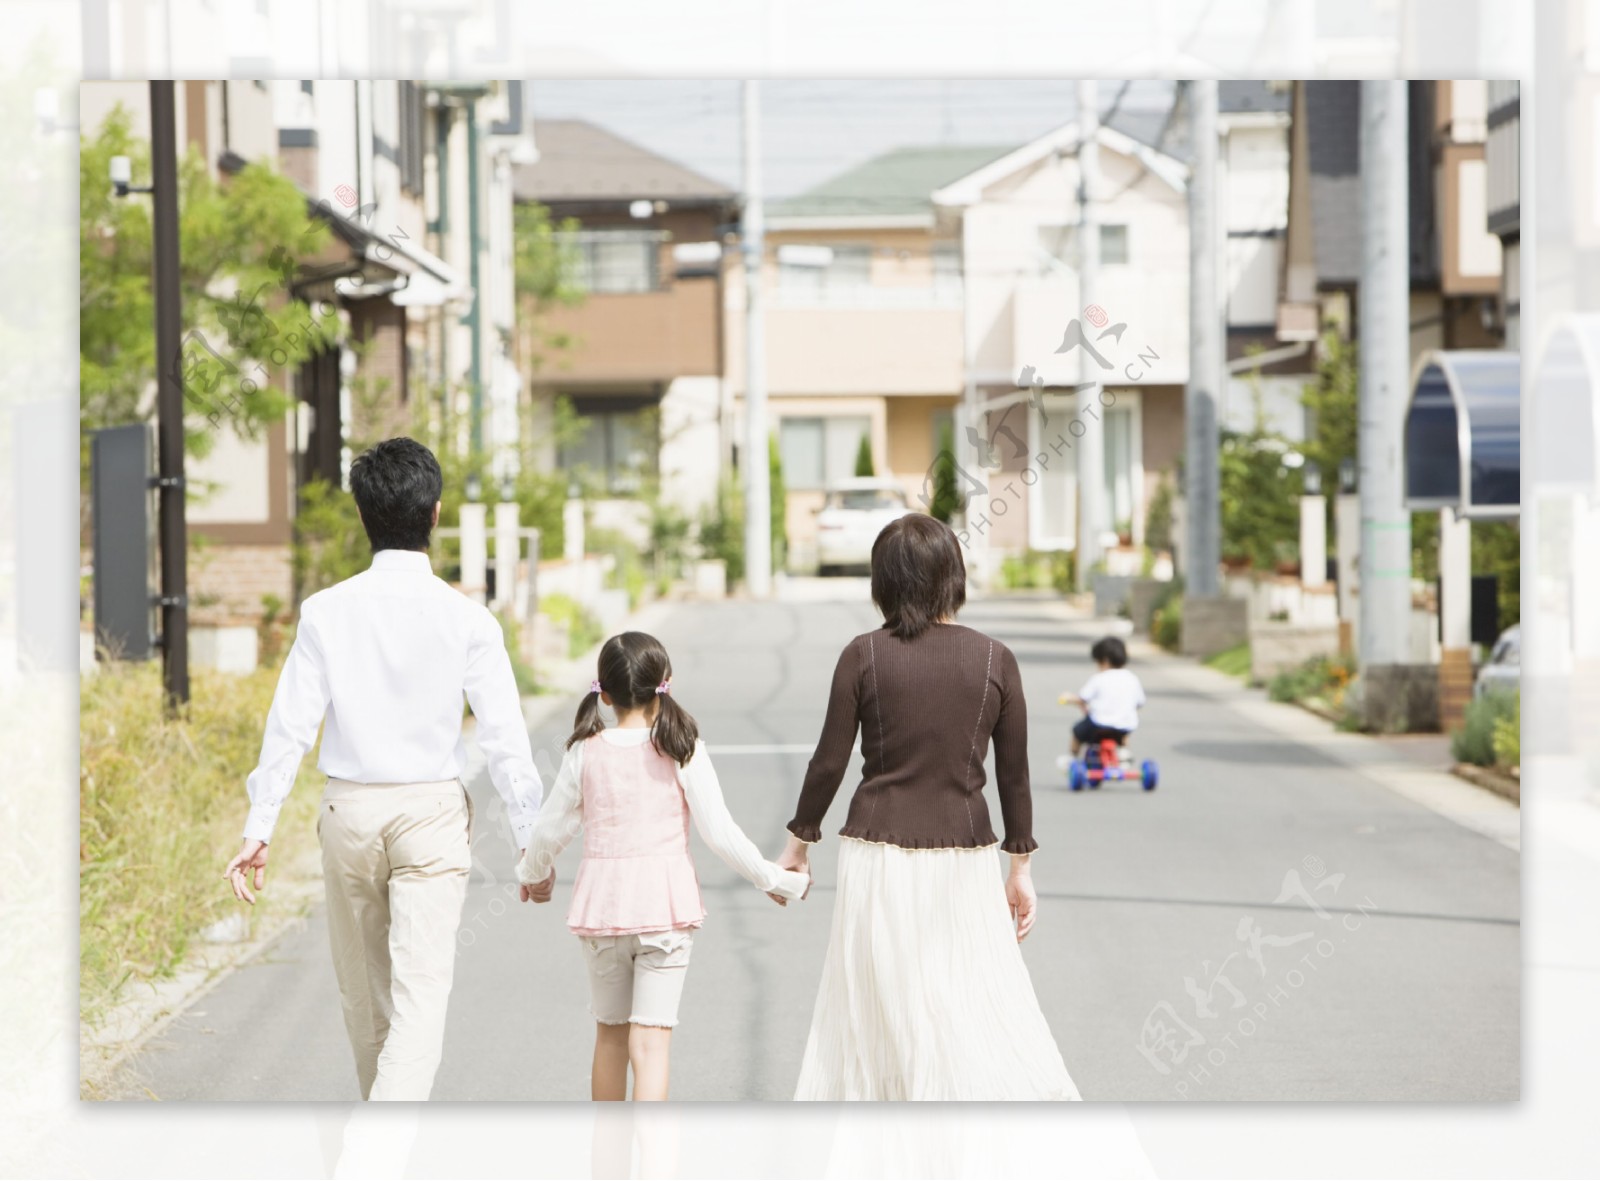 郊外散步的幸福家庭背影图片图片